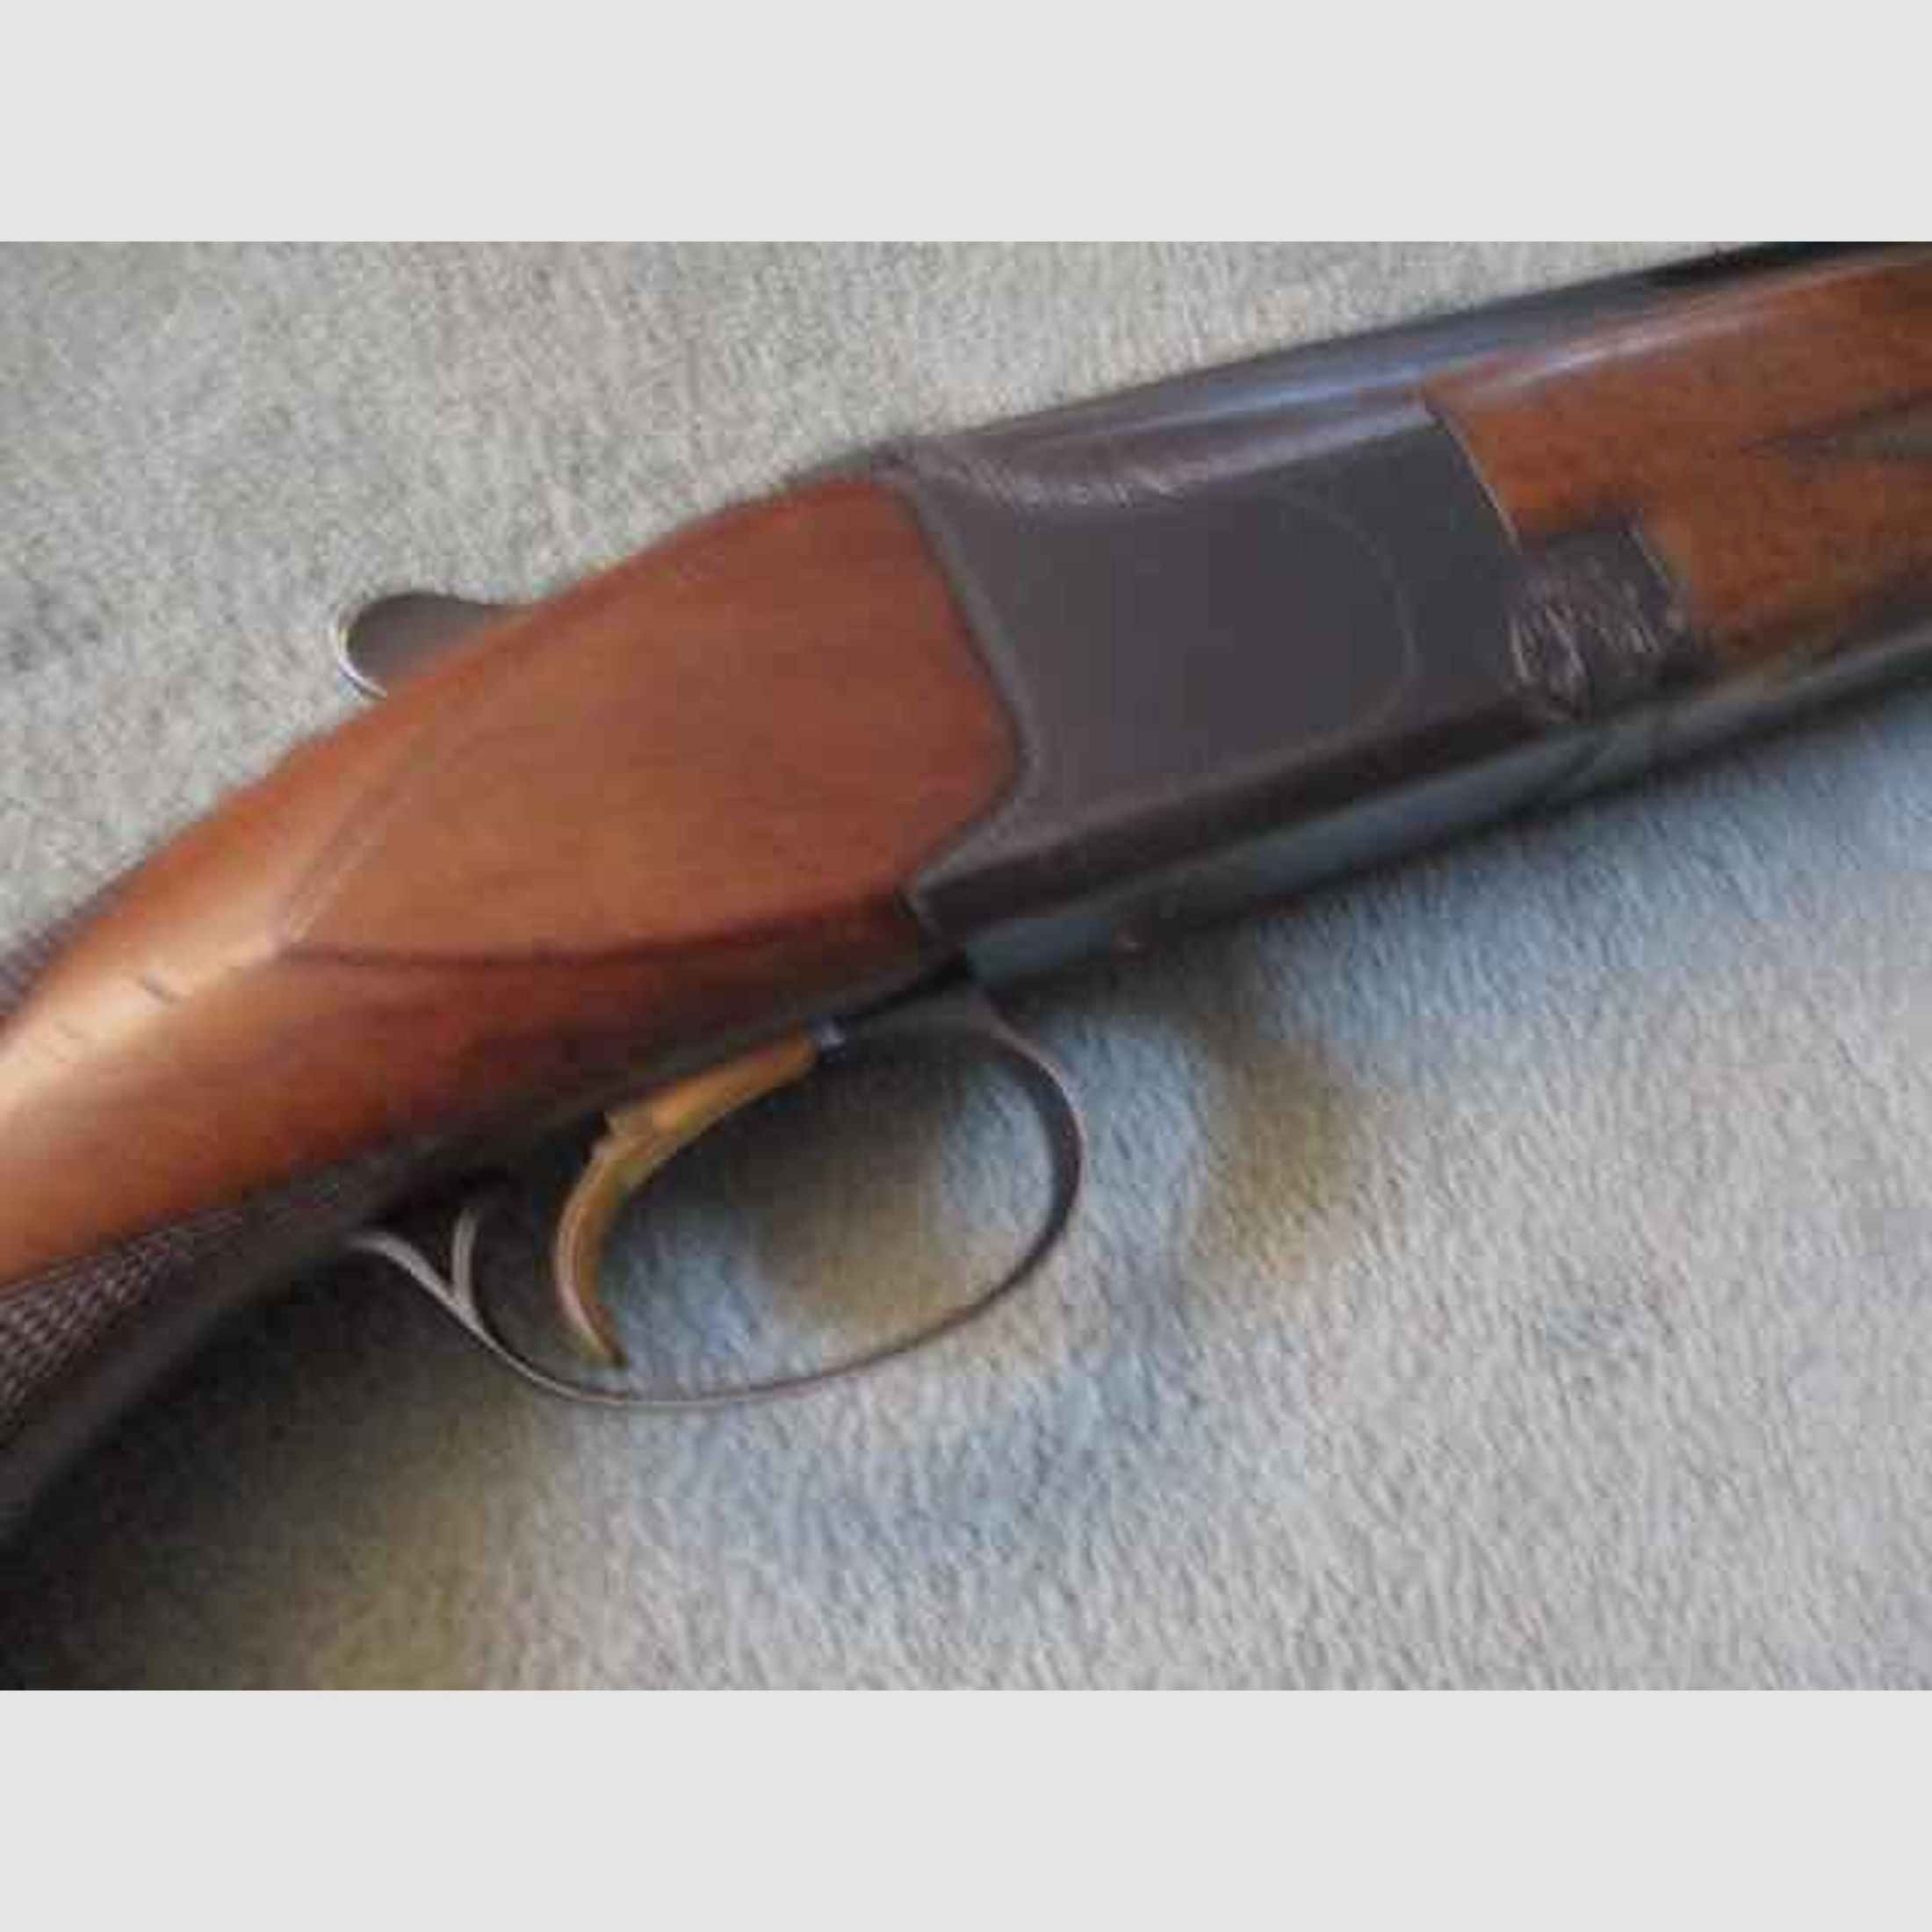 Bockdoppelflinte FN Browning, Mod. B25, 12/70 aus 73